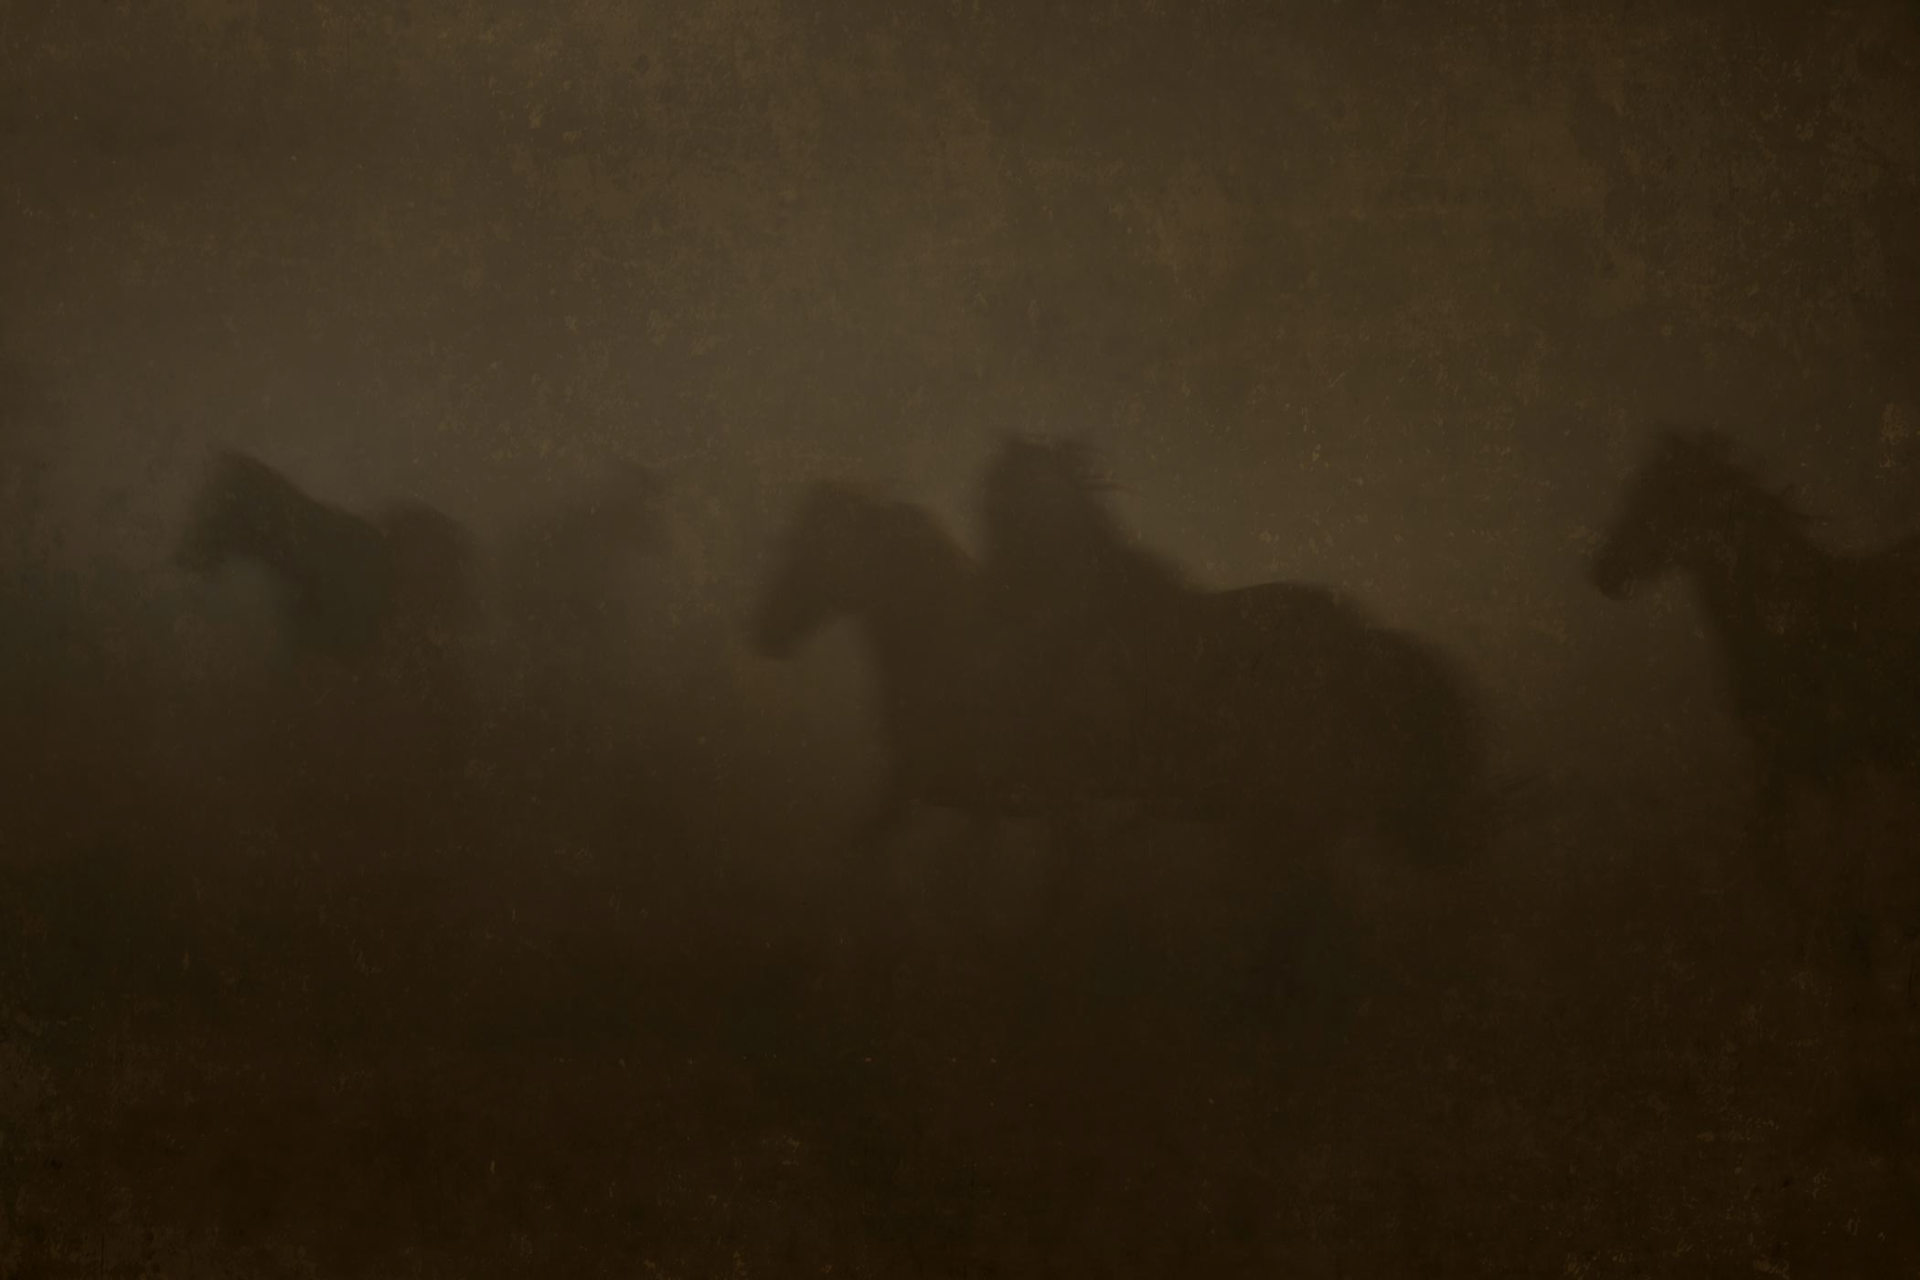 Wild Horses/Fog  2/10 by Jack Spencer